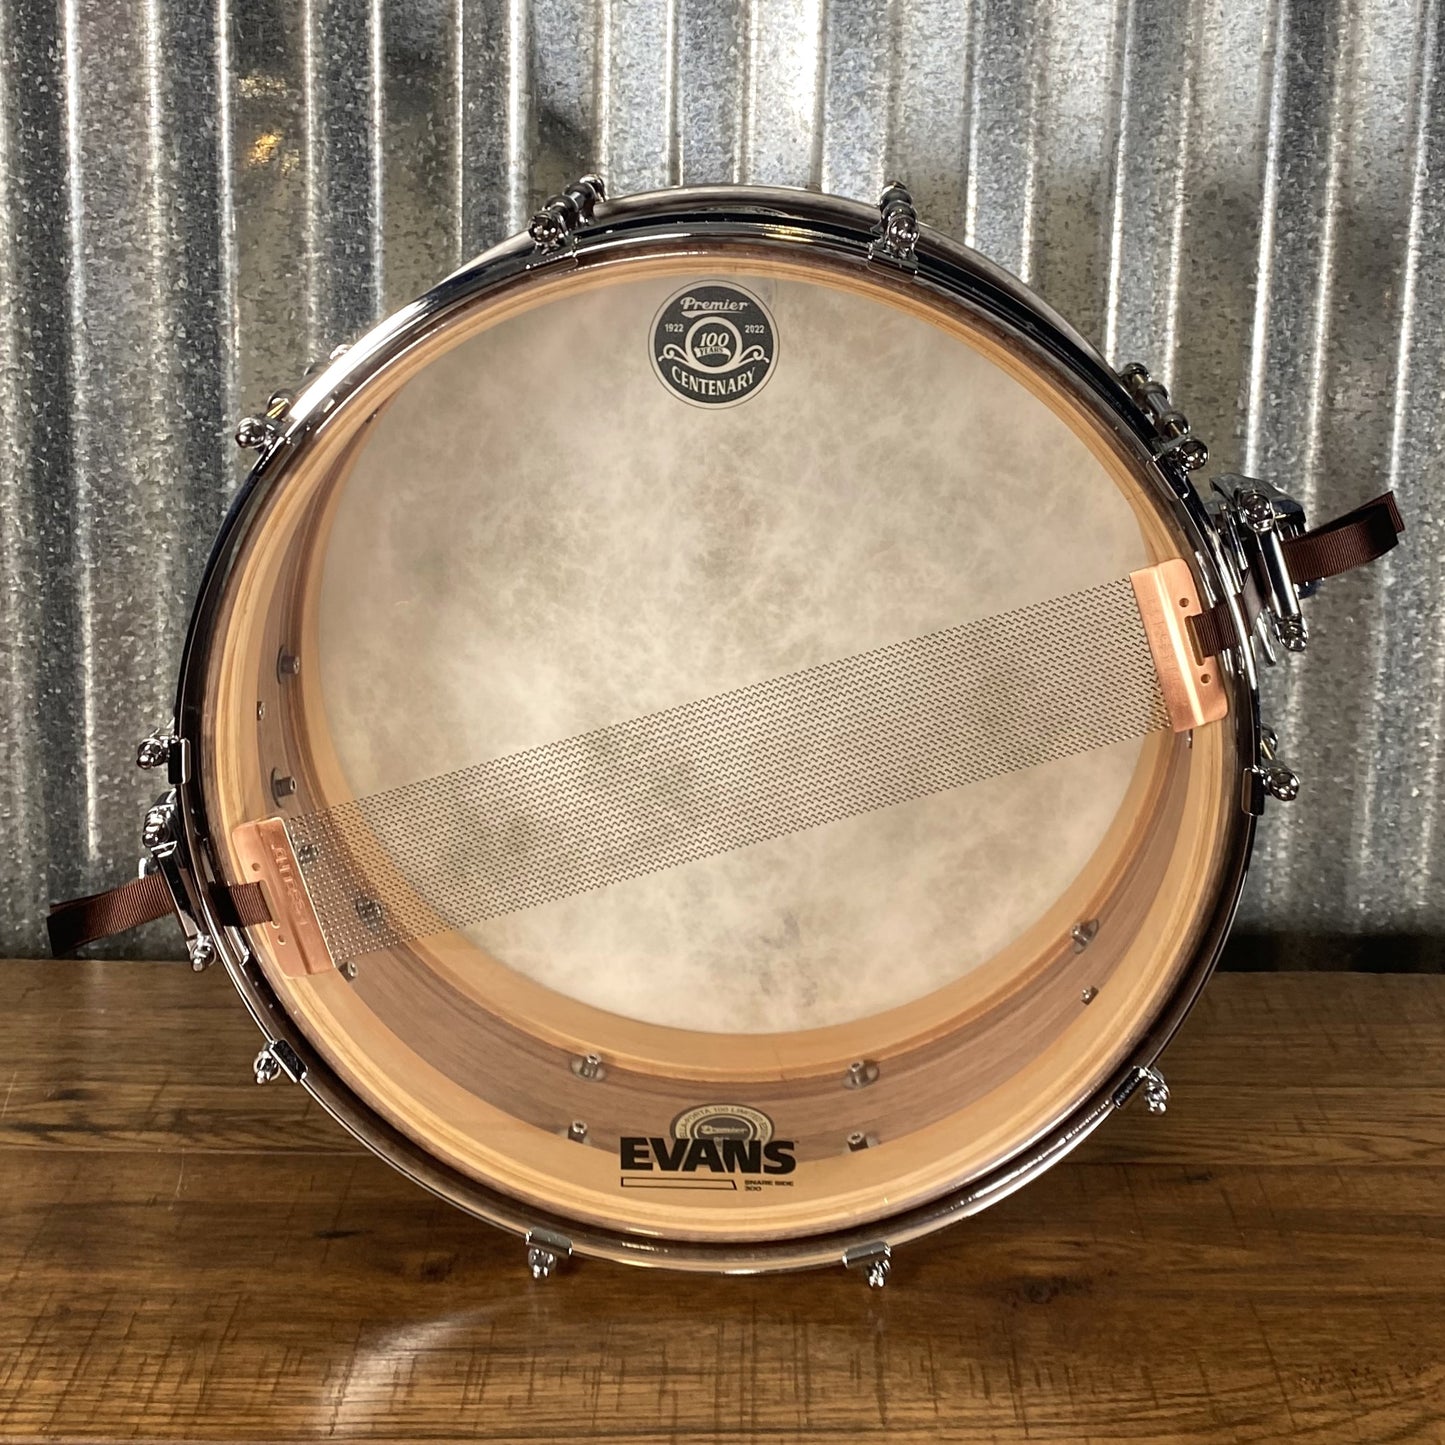 Premier DP100 Della-Porta 47 of 100 Limited Edition Walnut Snare Drum